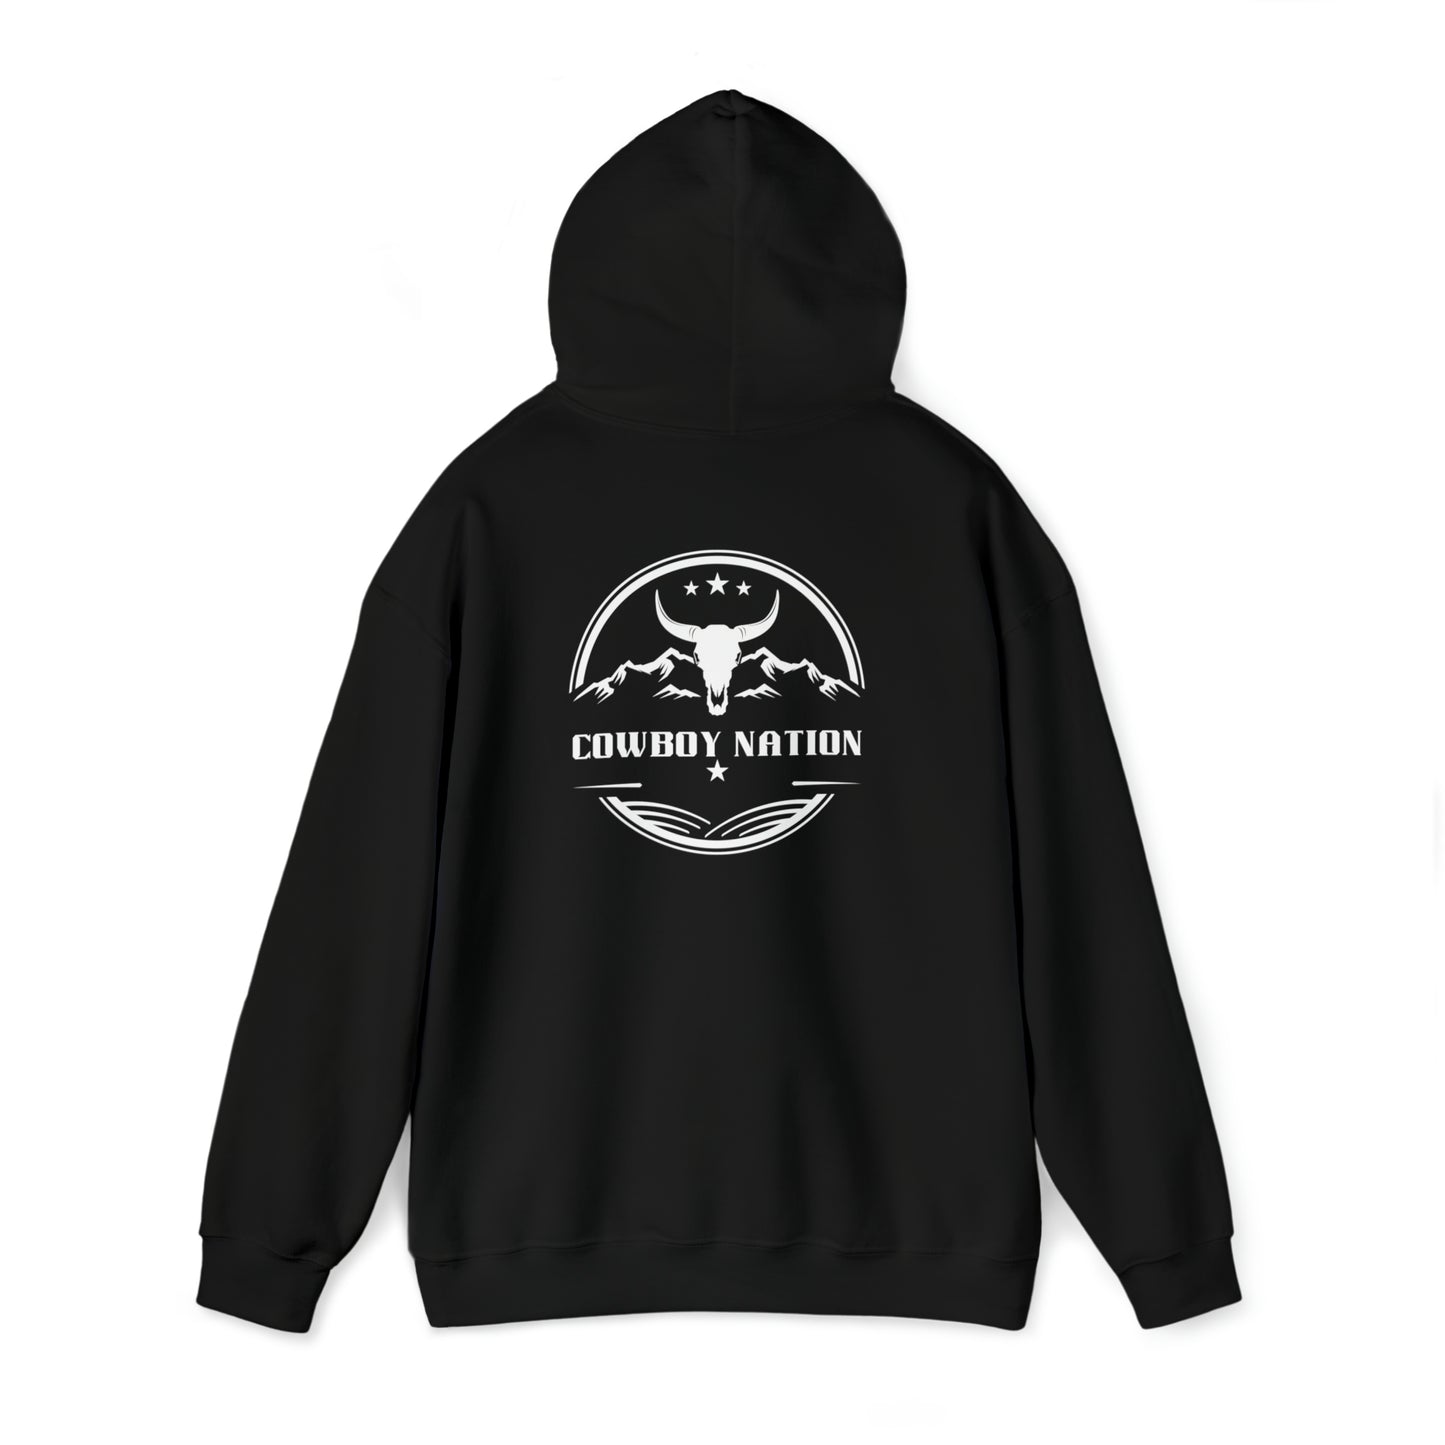 Cowboy Nation hoodie - Unisex Heavy Blend™ Hooded Sweatshirt